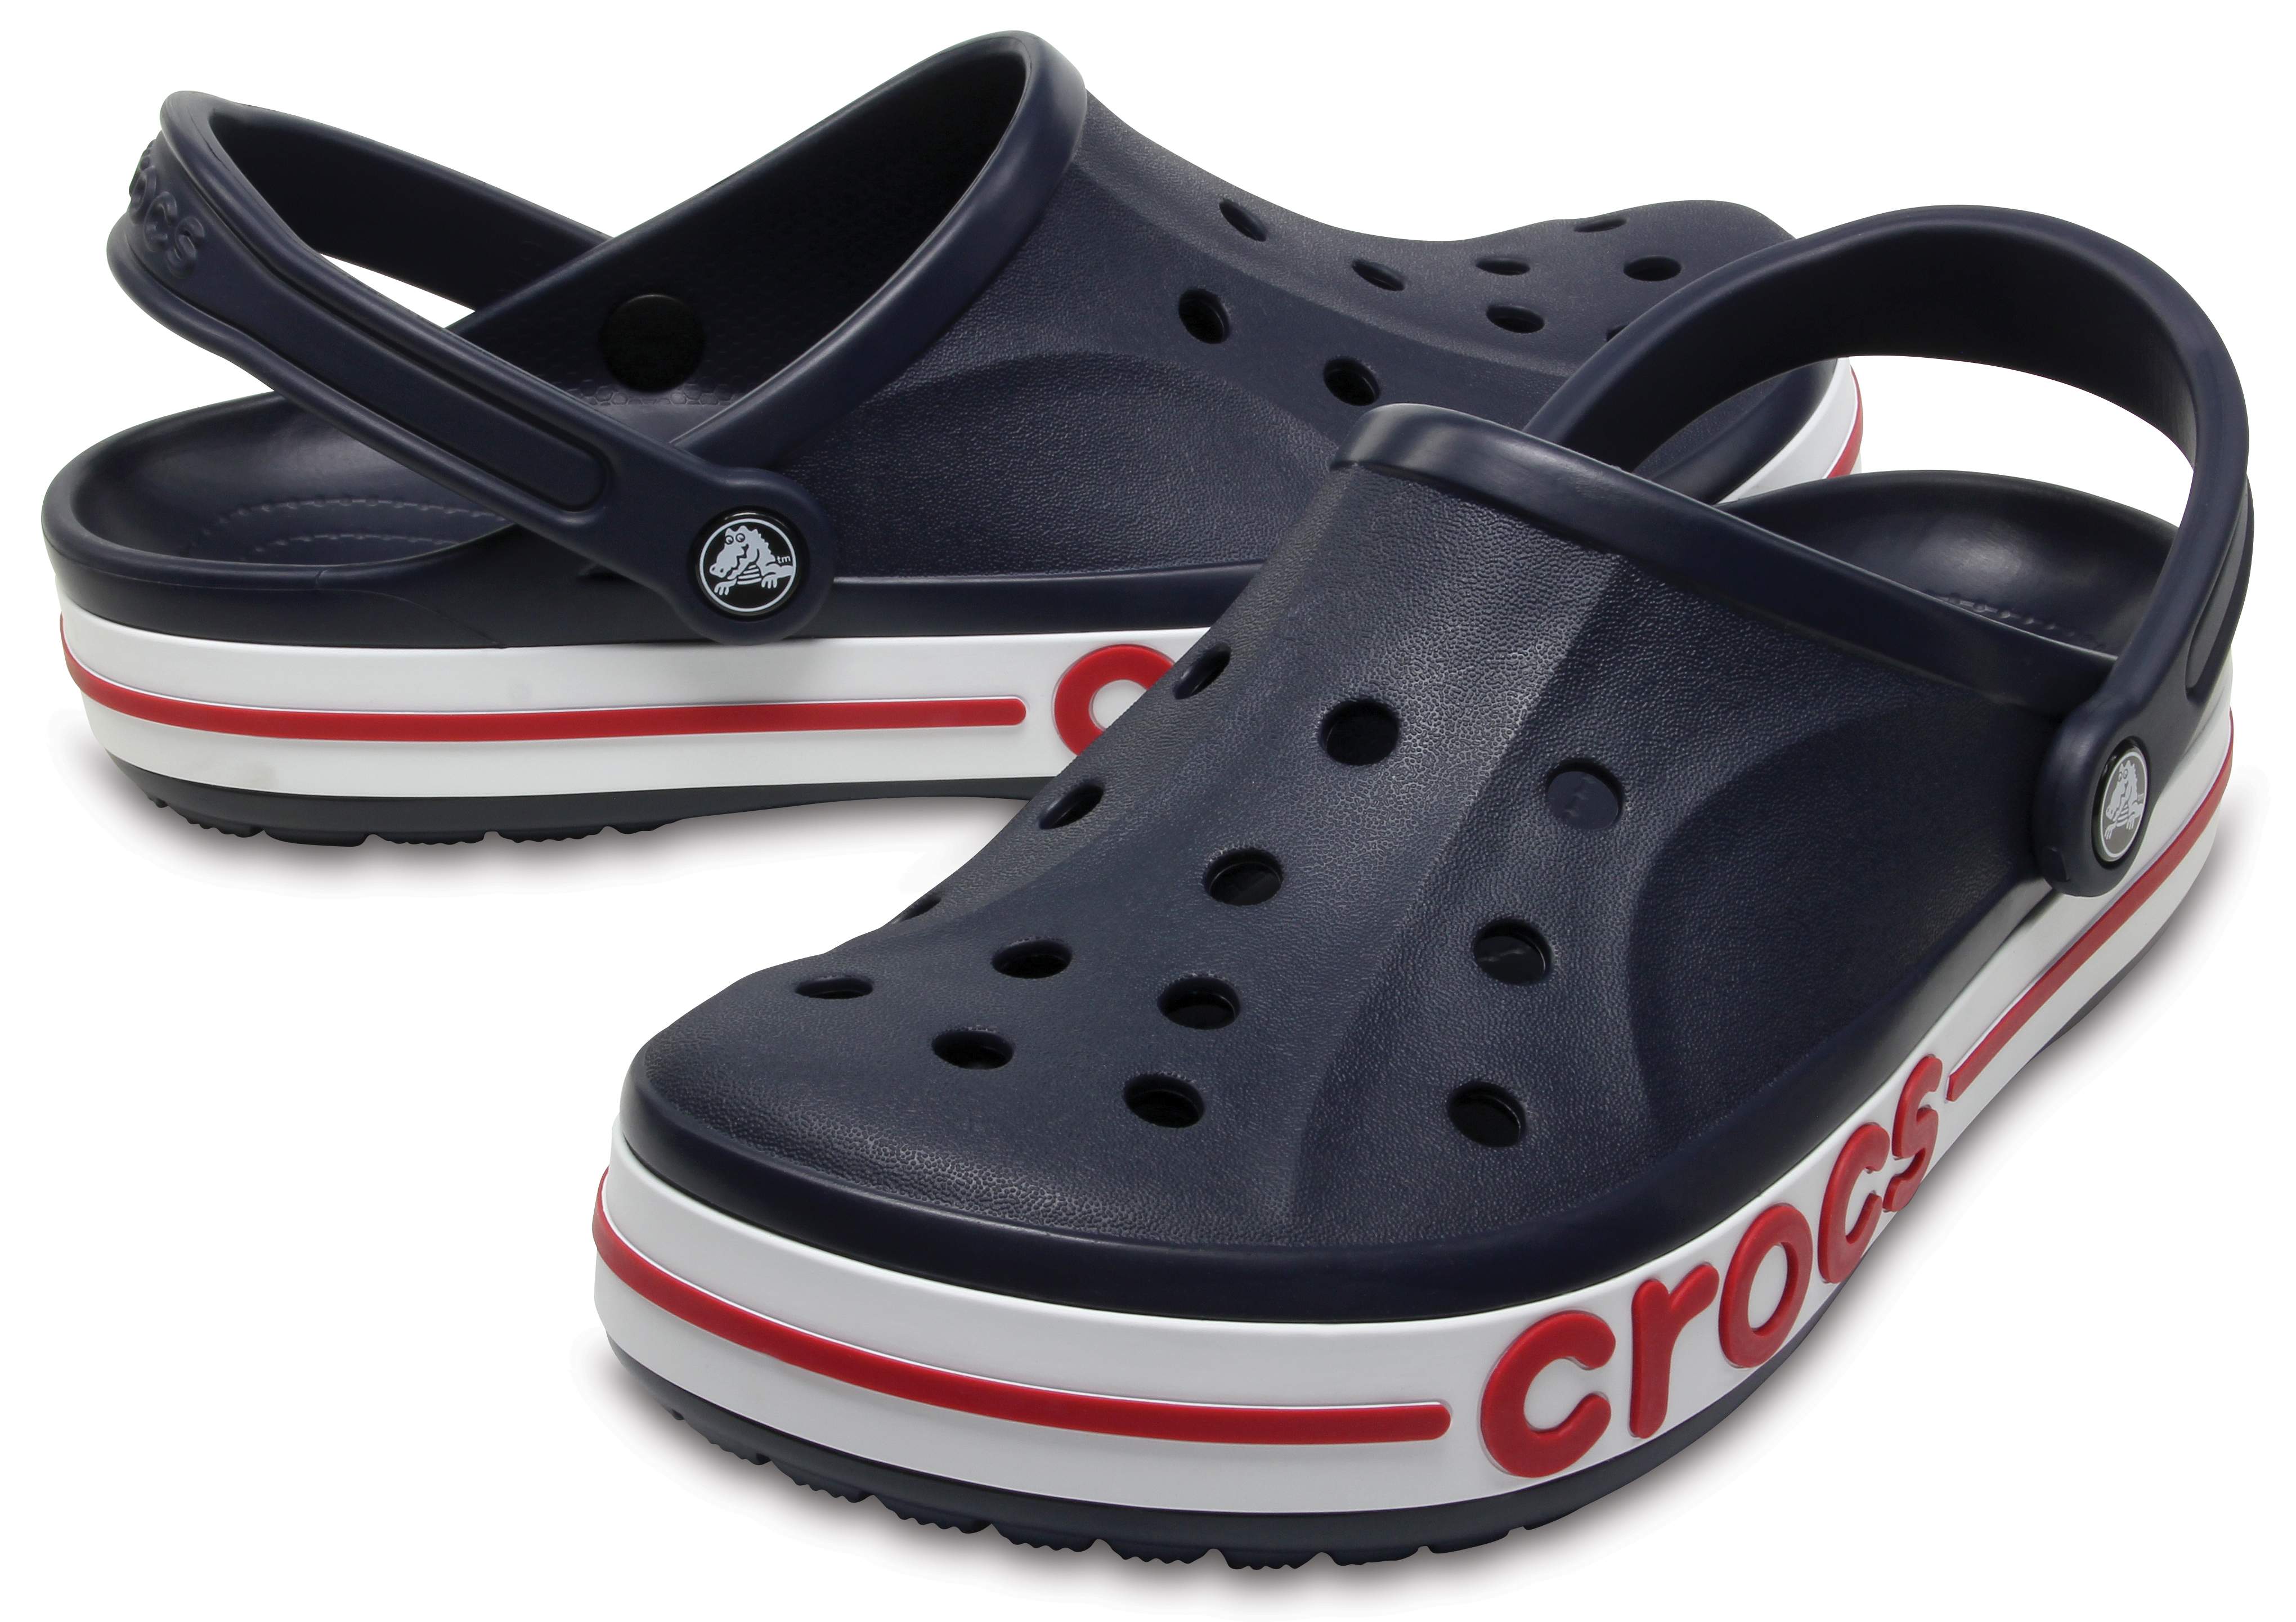 crocs bayaband clogs